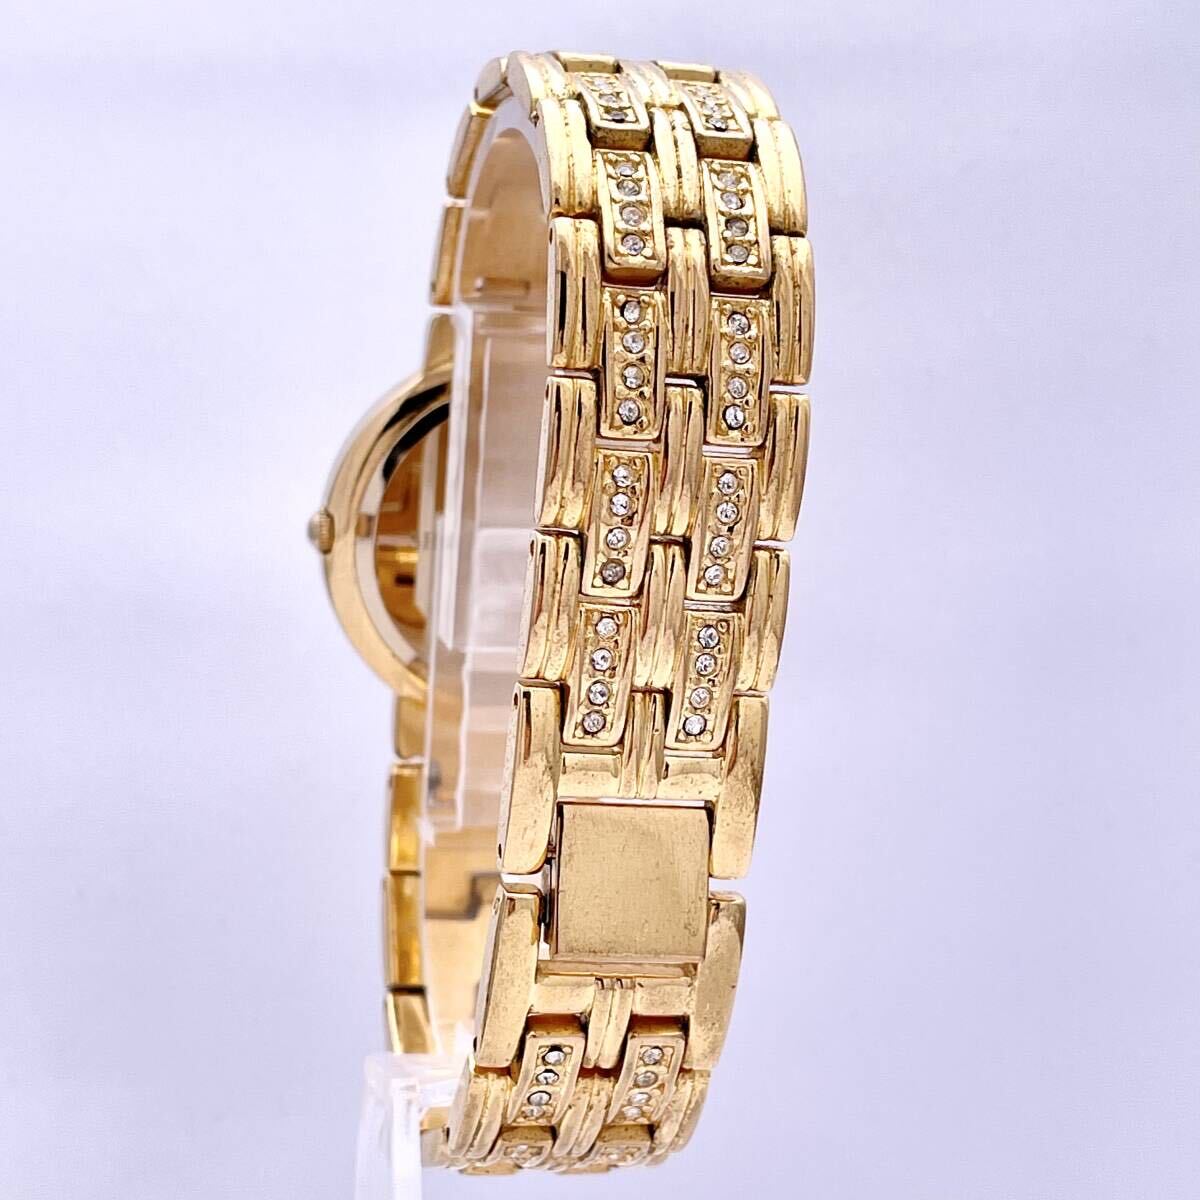 SHEEN VALENTINO シェーン ヴァレンチノ 1247 G 腕時計 ウォッチ クォーツ quartz スクリューバッグ ラインストーン 金 ゴールド P199